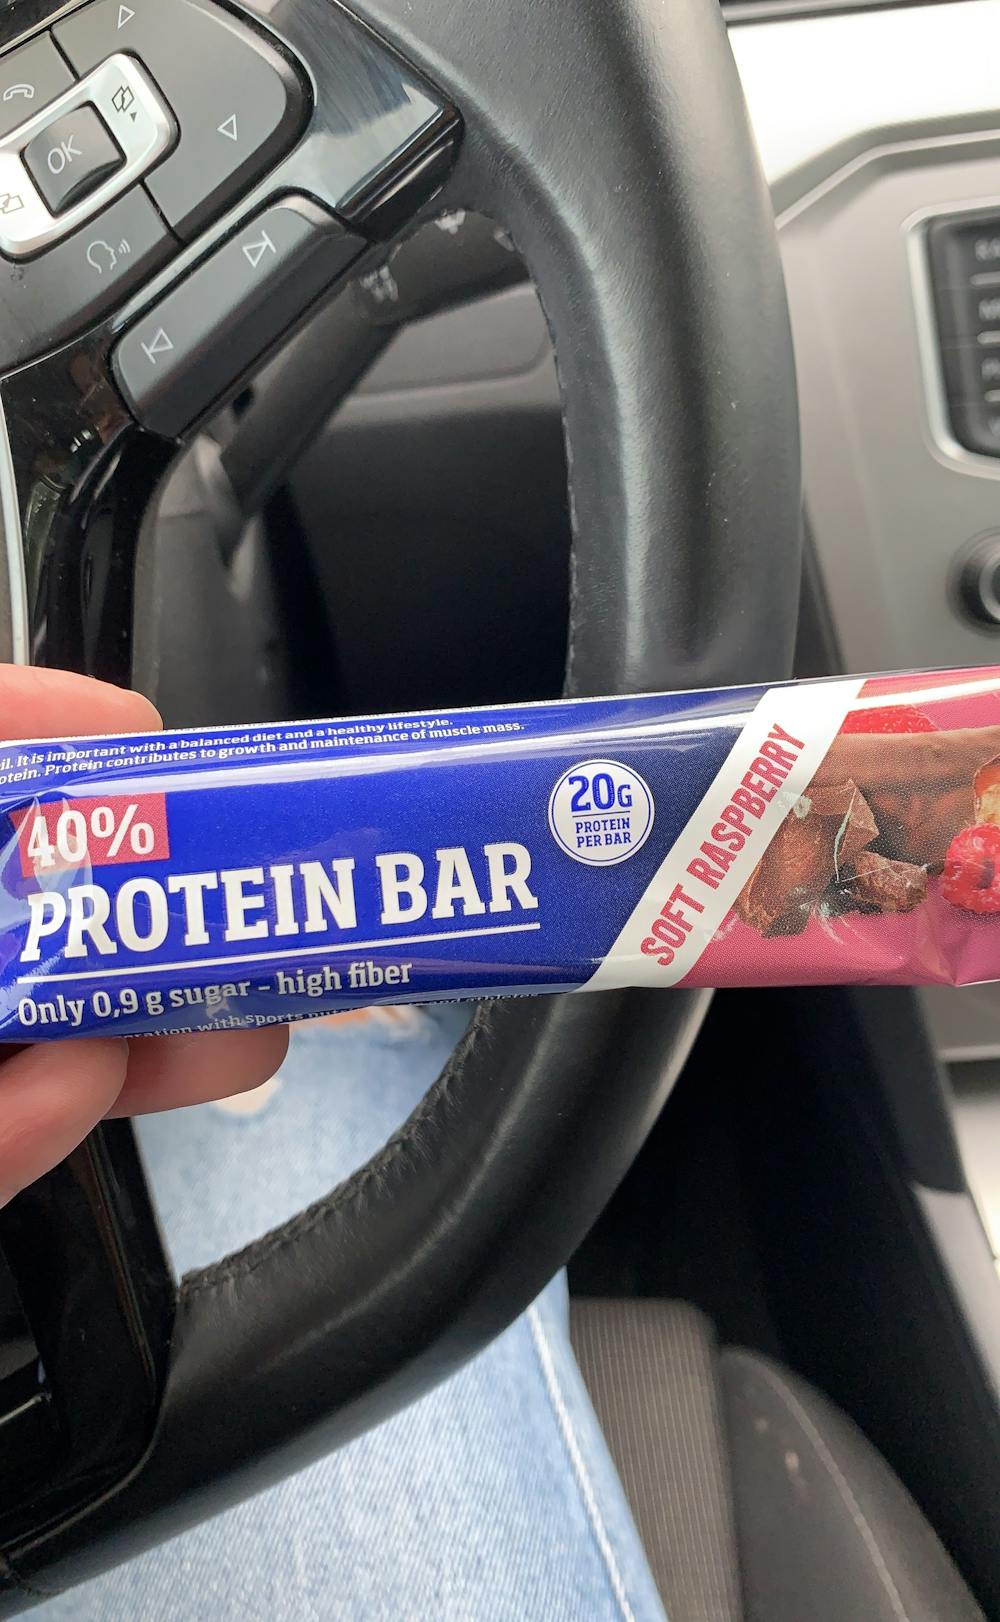 40% protein bar, Proteinfabrikken